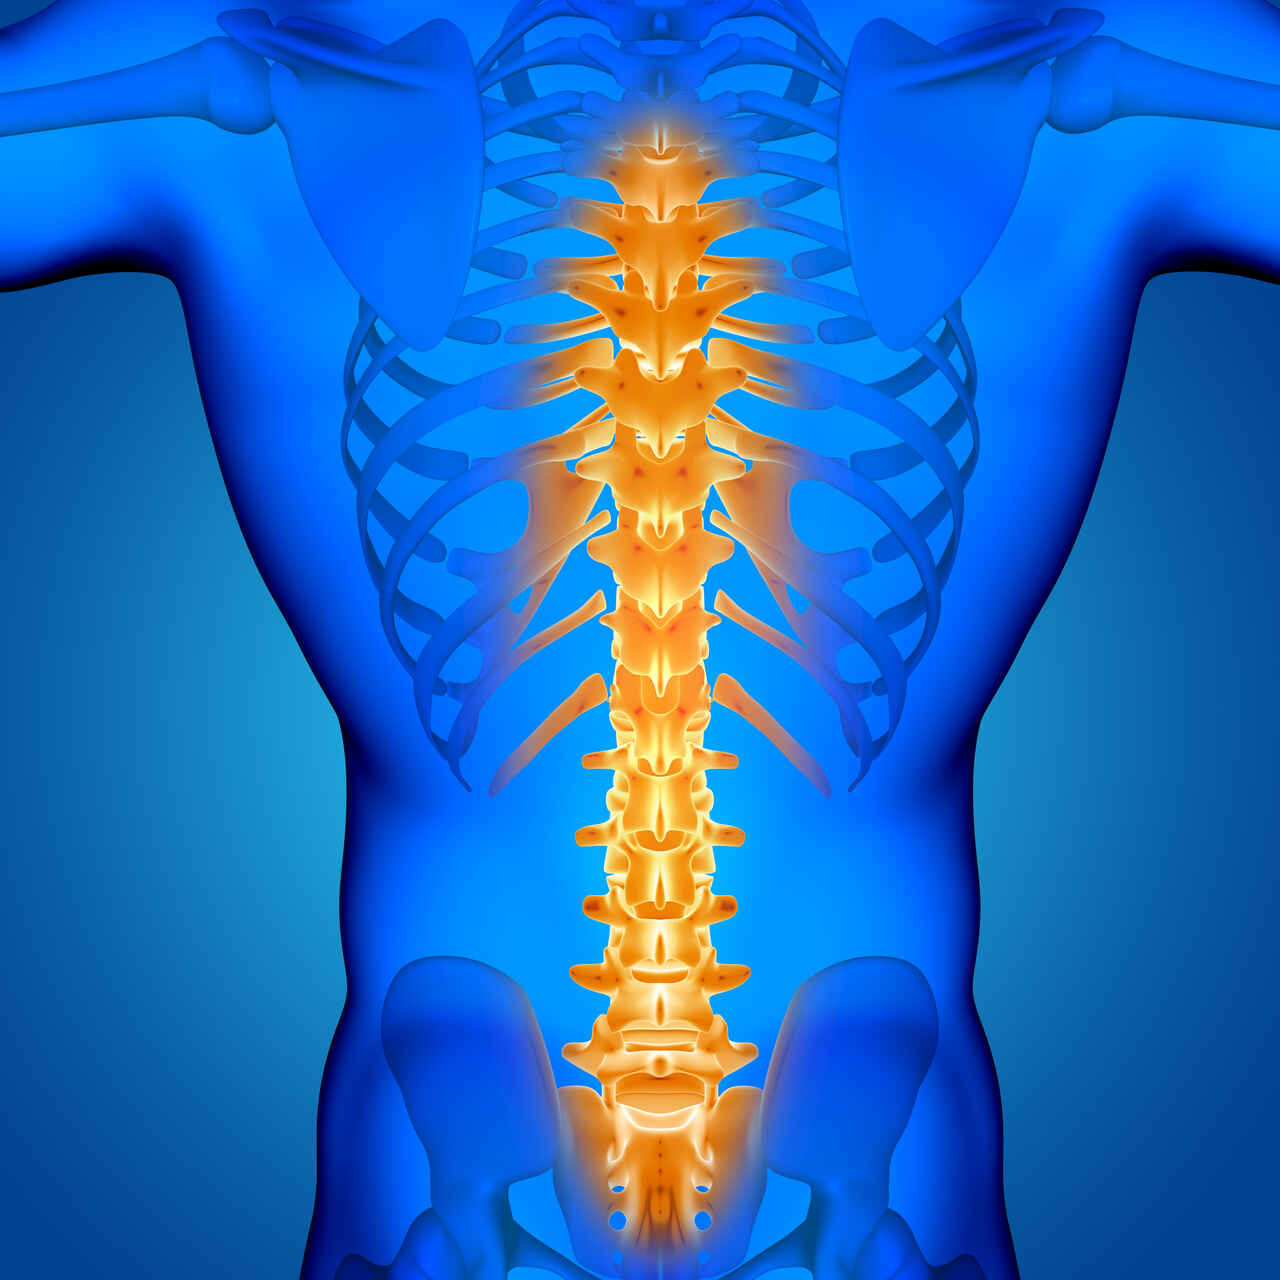 Ortopedia Goiânia - 6 benefícios da cirurgia endoscópica na coluna